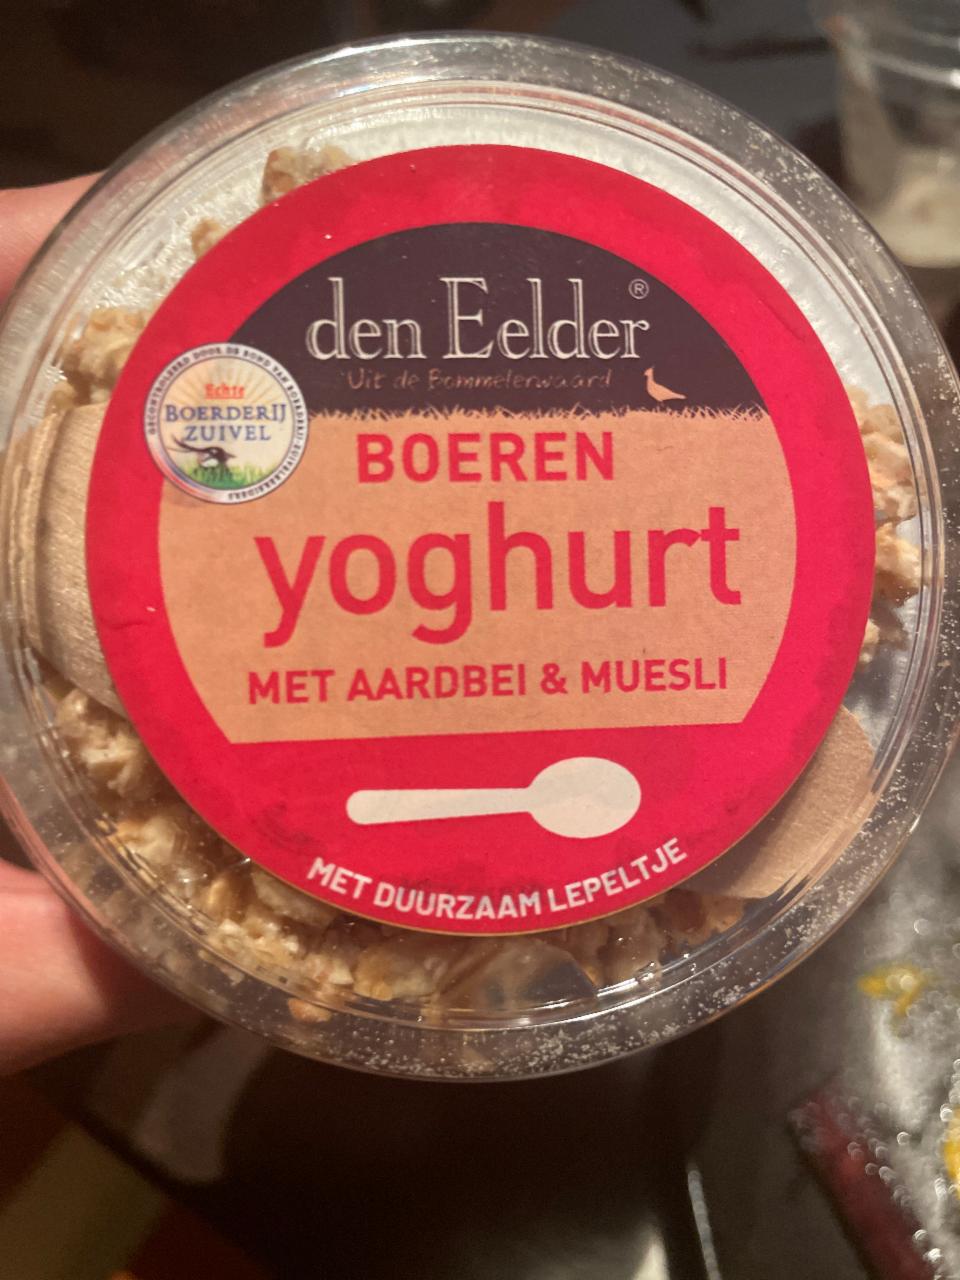 Fotografie - Boeren yoghurt met aardbei & muesli den Eelder